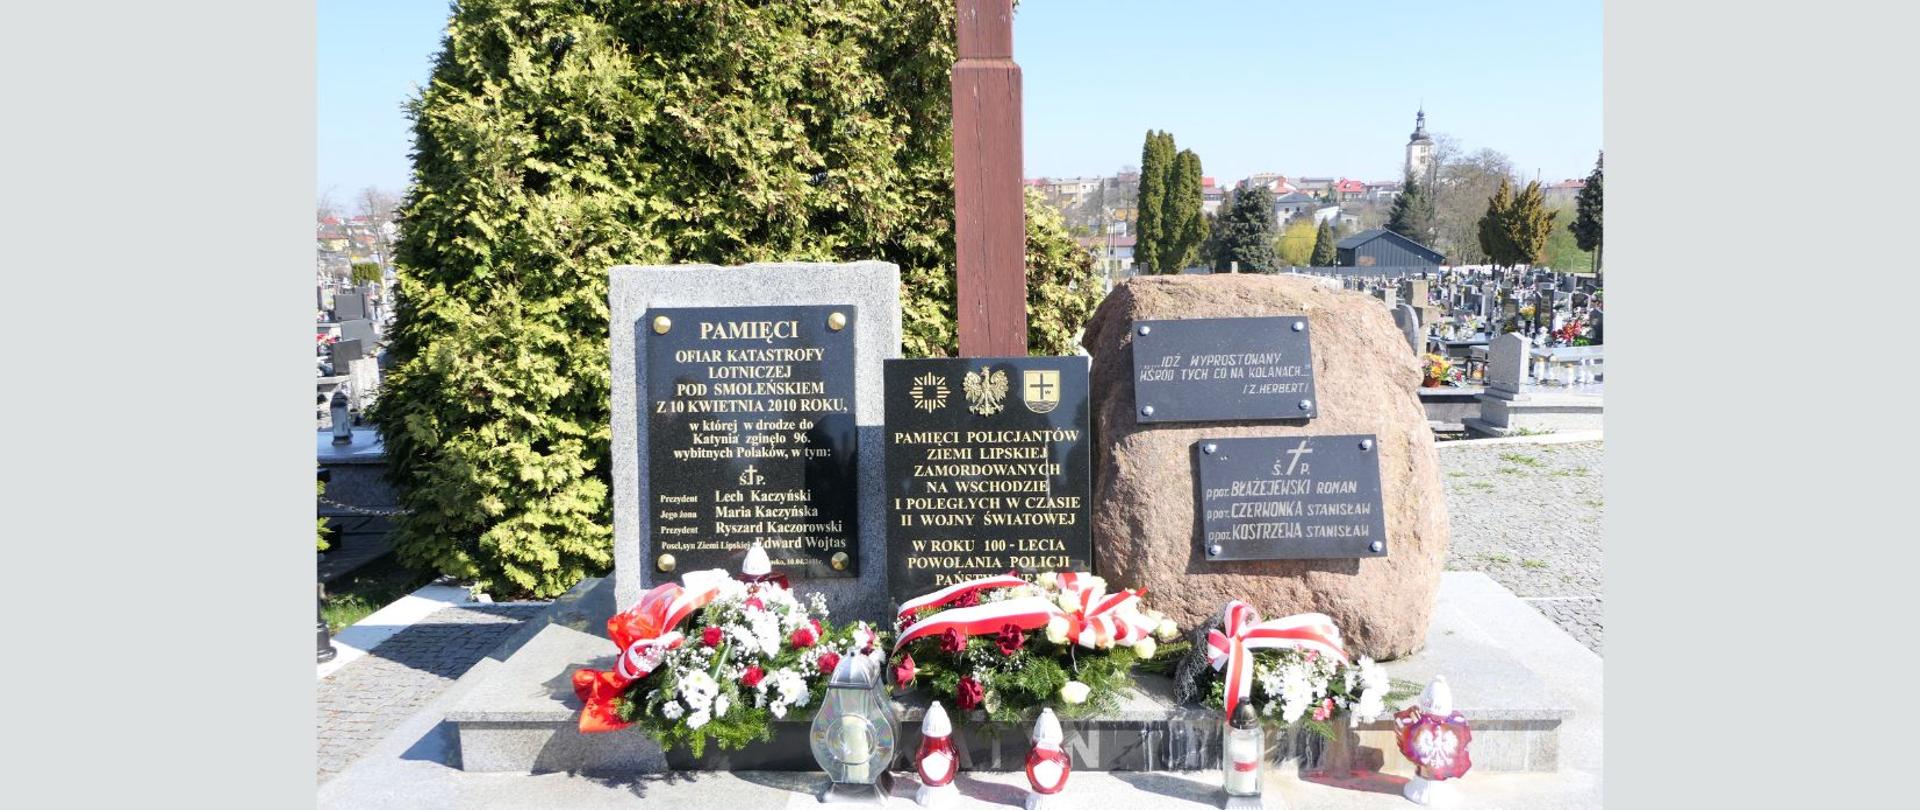 Miejscu pamięci przy Krzyżu Katyńskim na cmentarzu parafialnym w Lipsku, przy którym złożono wiązanki i znicze na cmentarzu parafialnym w Lipsku. W tle panorama Lipska ze wzgórzem kościelnym.